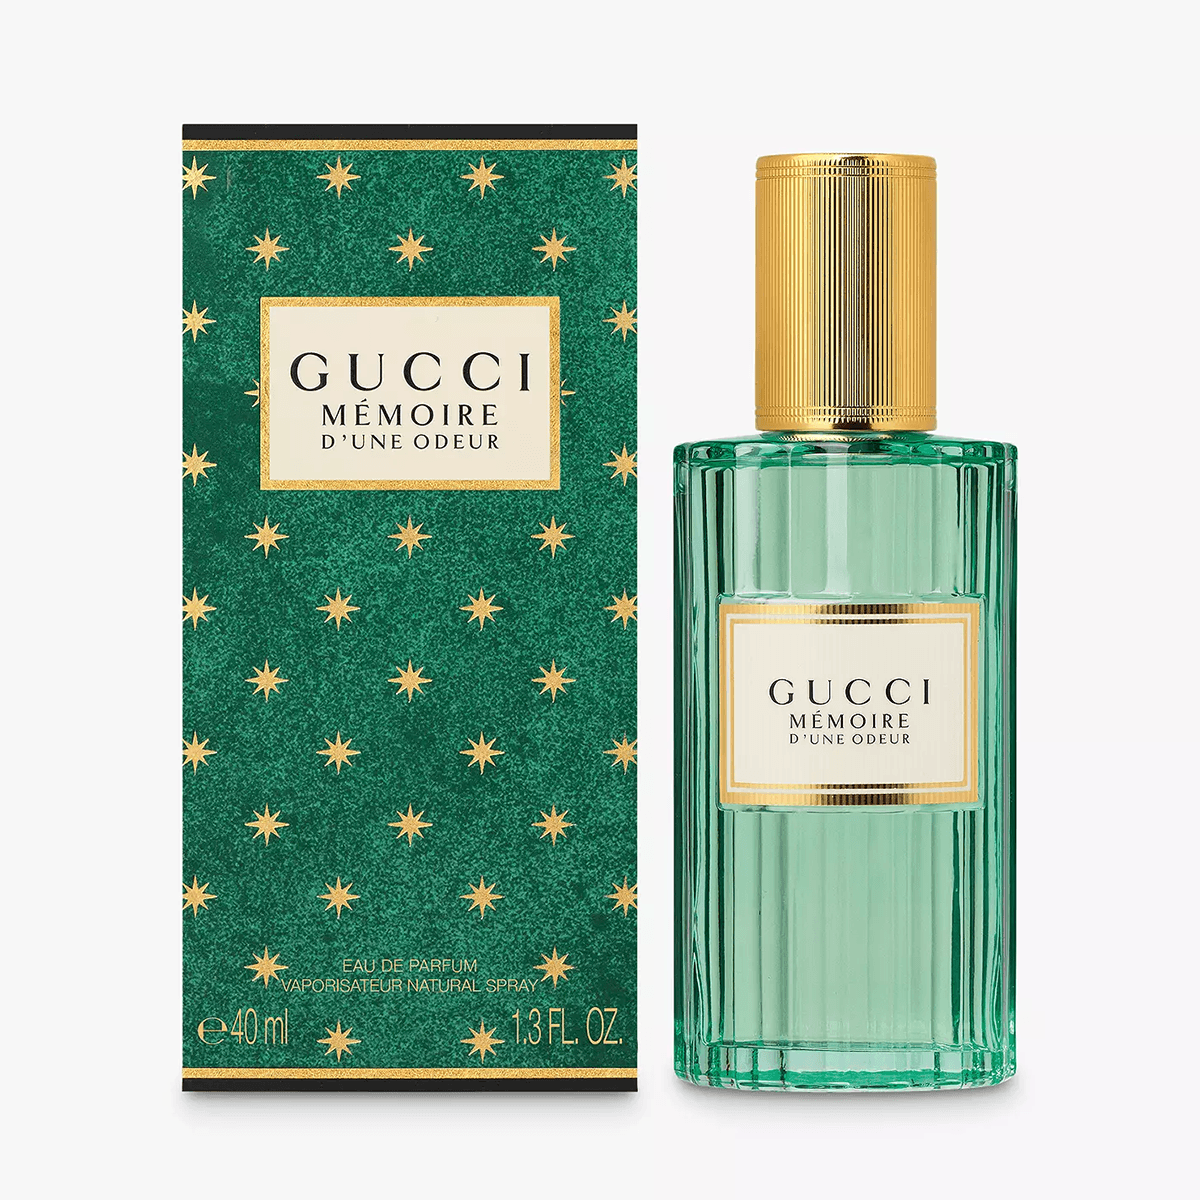 Gucci Mémoire D'une Odeur EDP - My Perfume Shop Australia